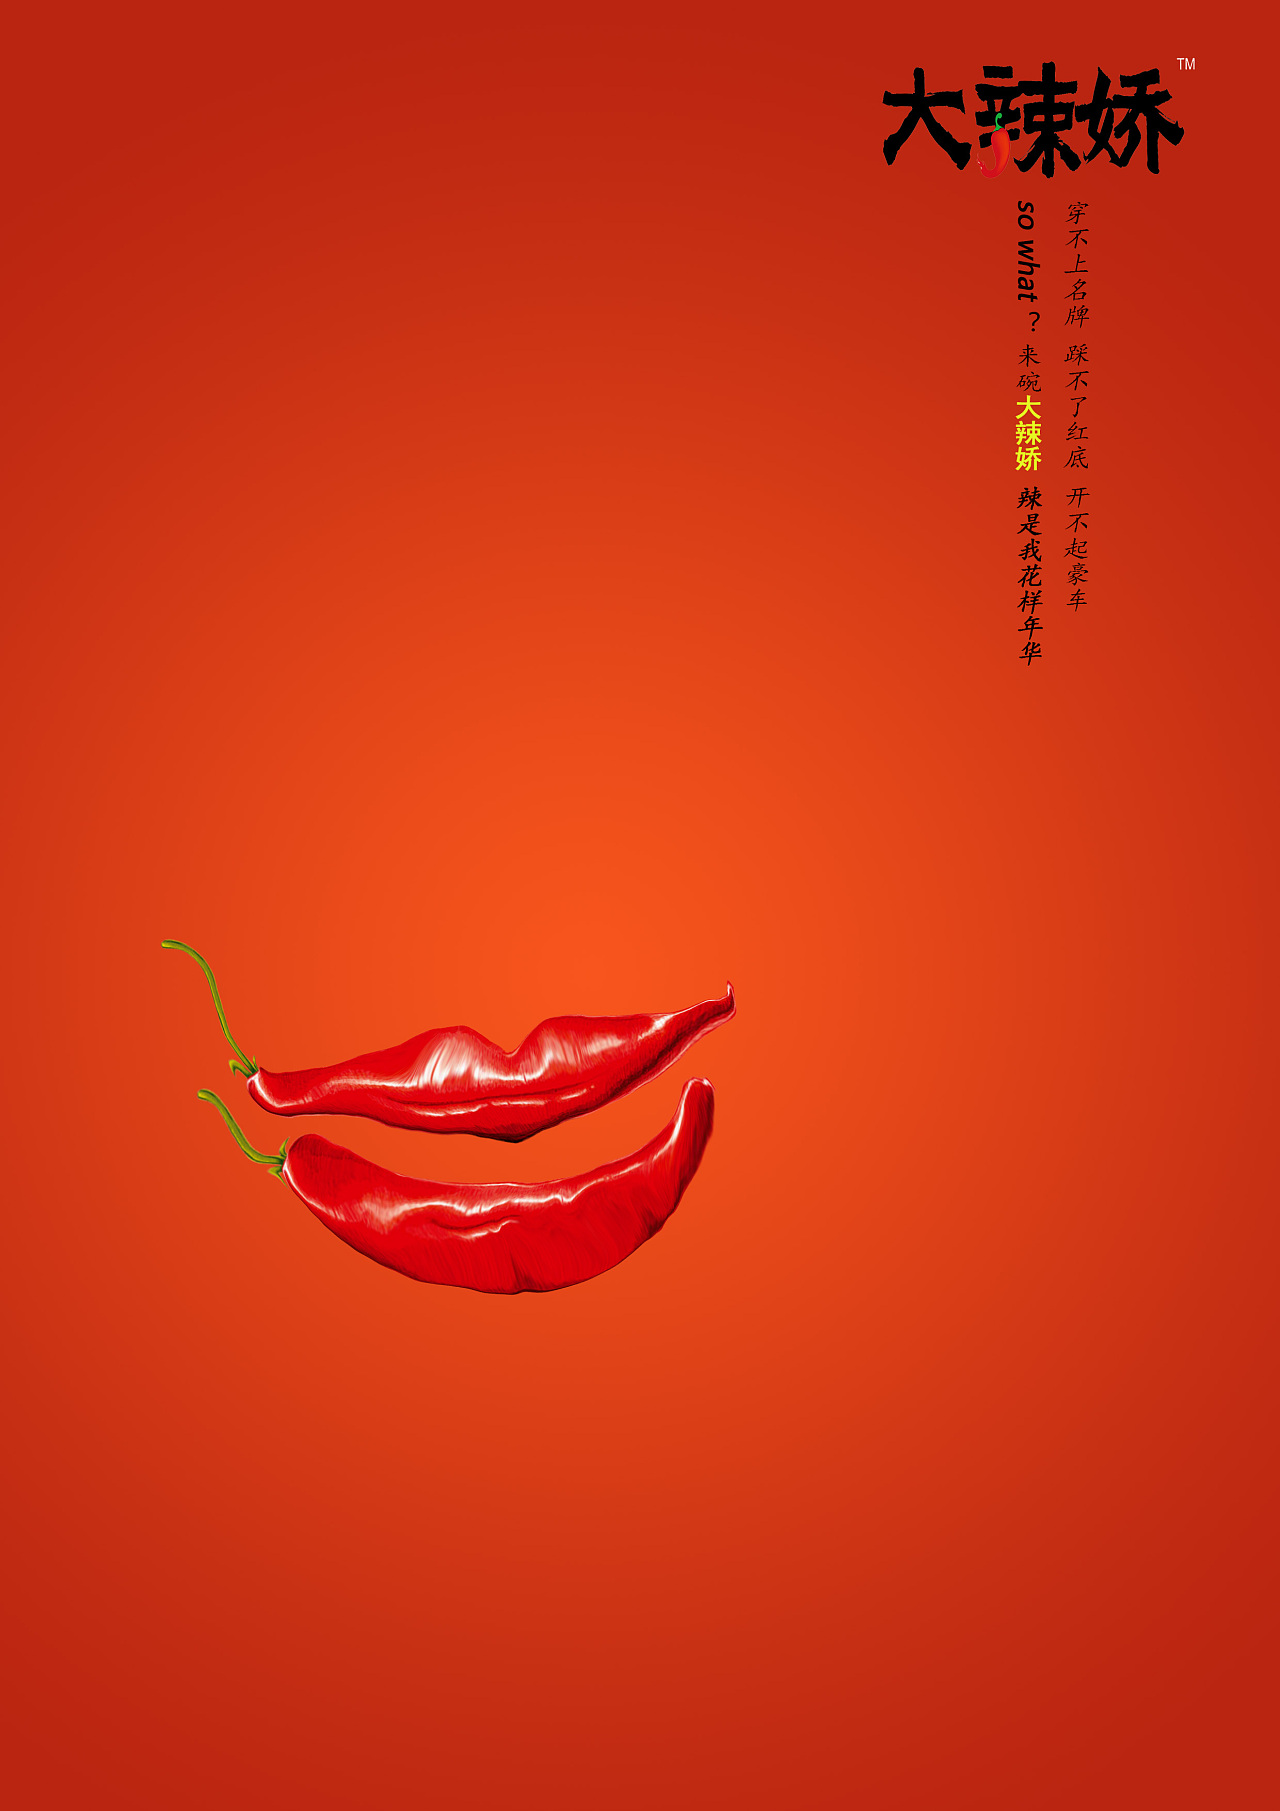 辣椒为主题的创意图图片